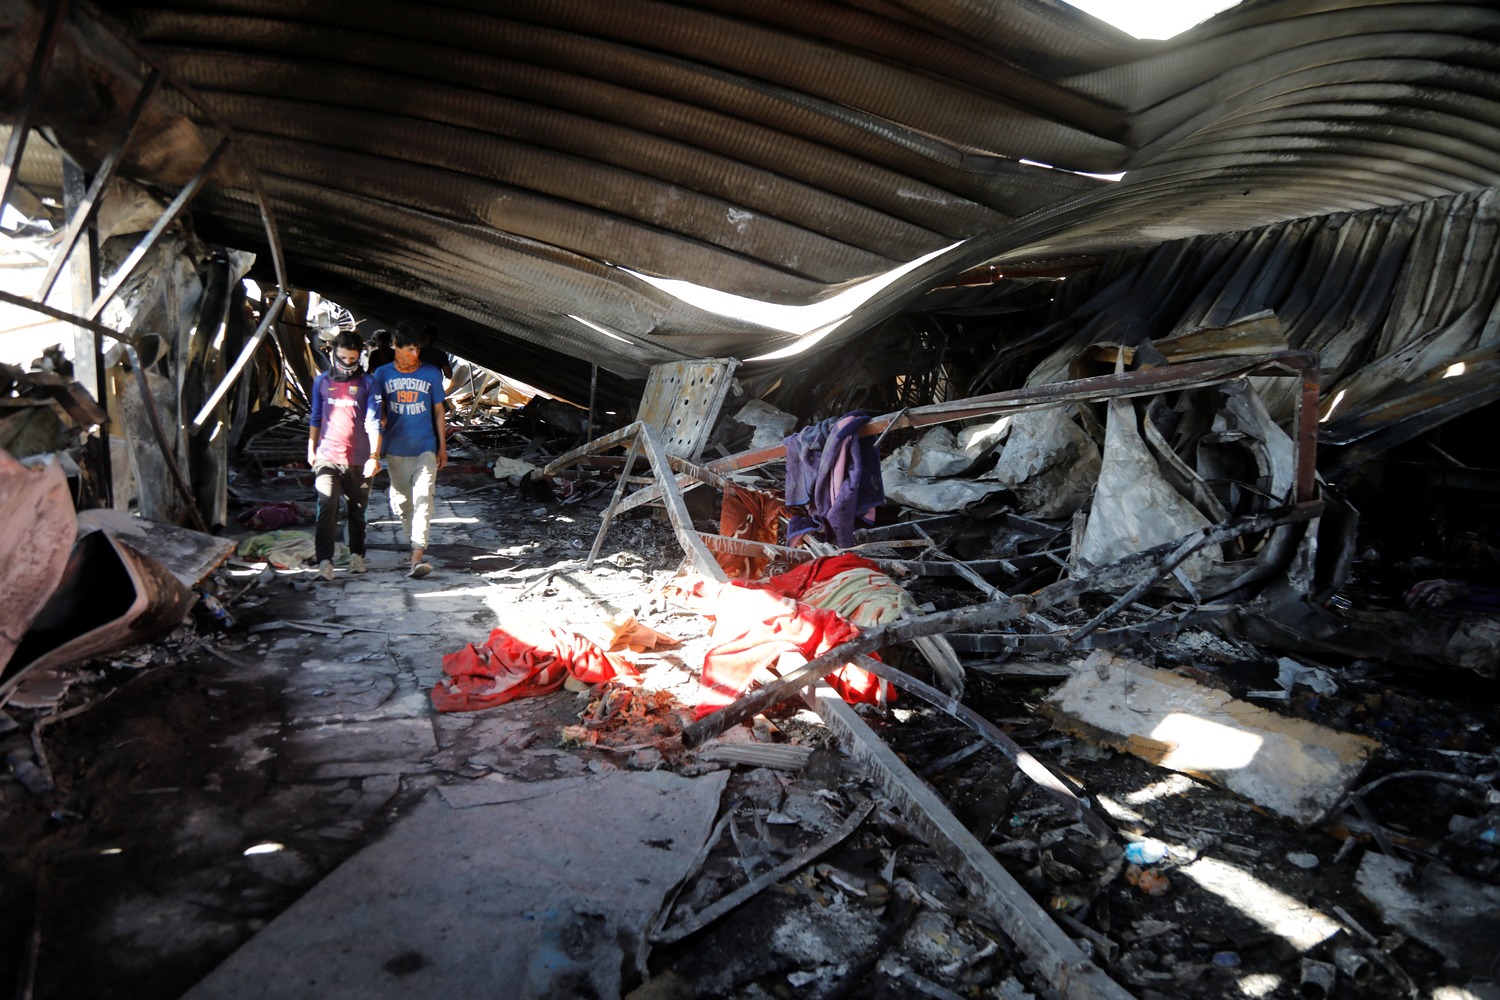 伊拉克醫院氧氣瓶爆炸64死 憤怒家屬與警衝突燒警車